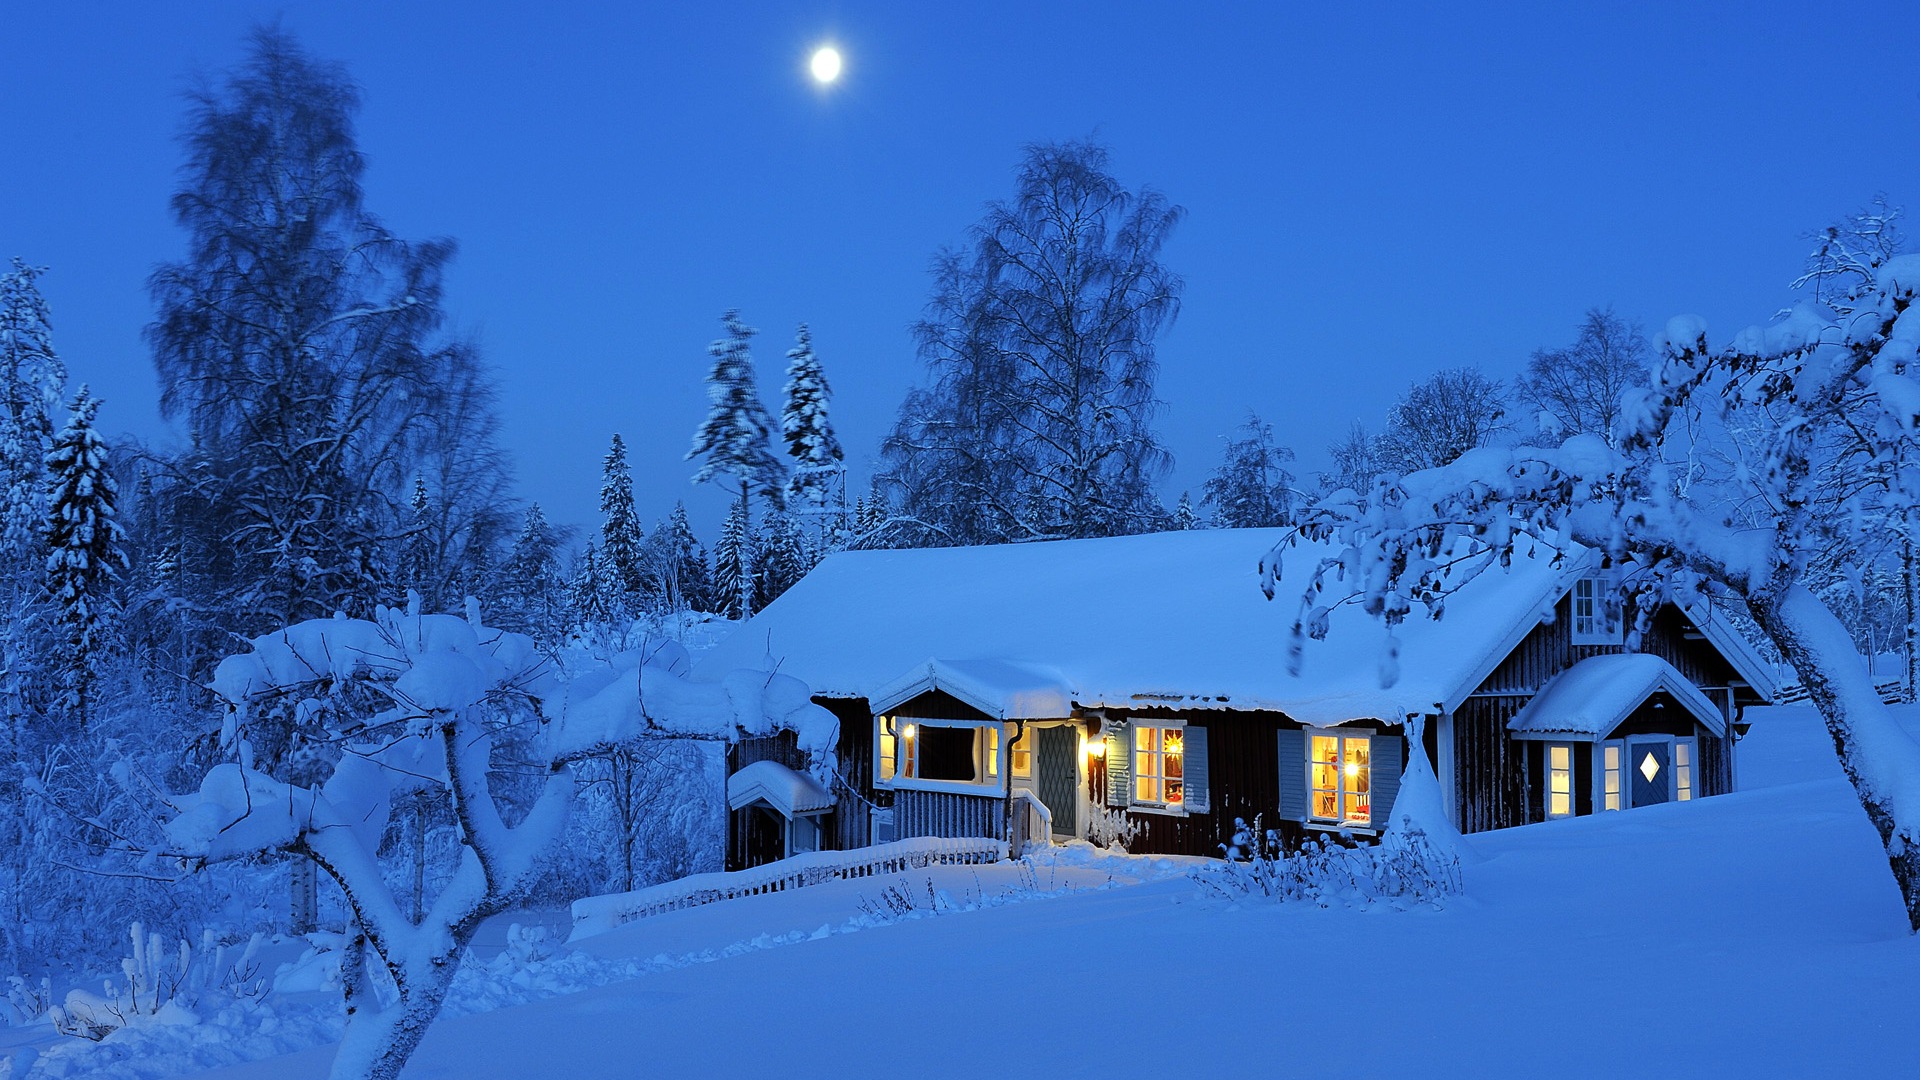 Windows 8 Theme HD Wallpapers: Nieve del invierno noche #13 - 1920x1080